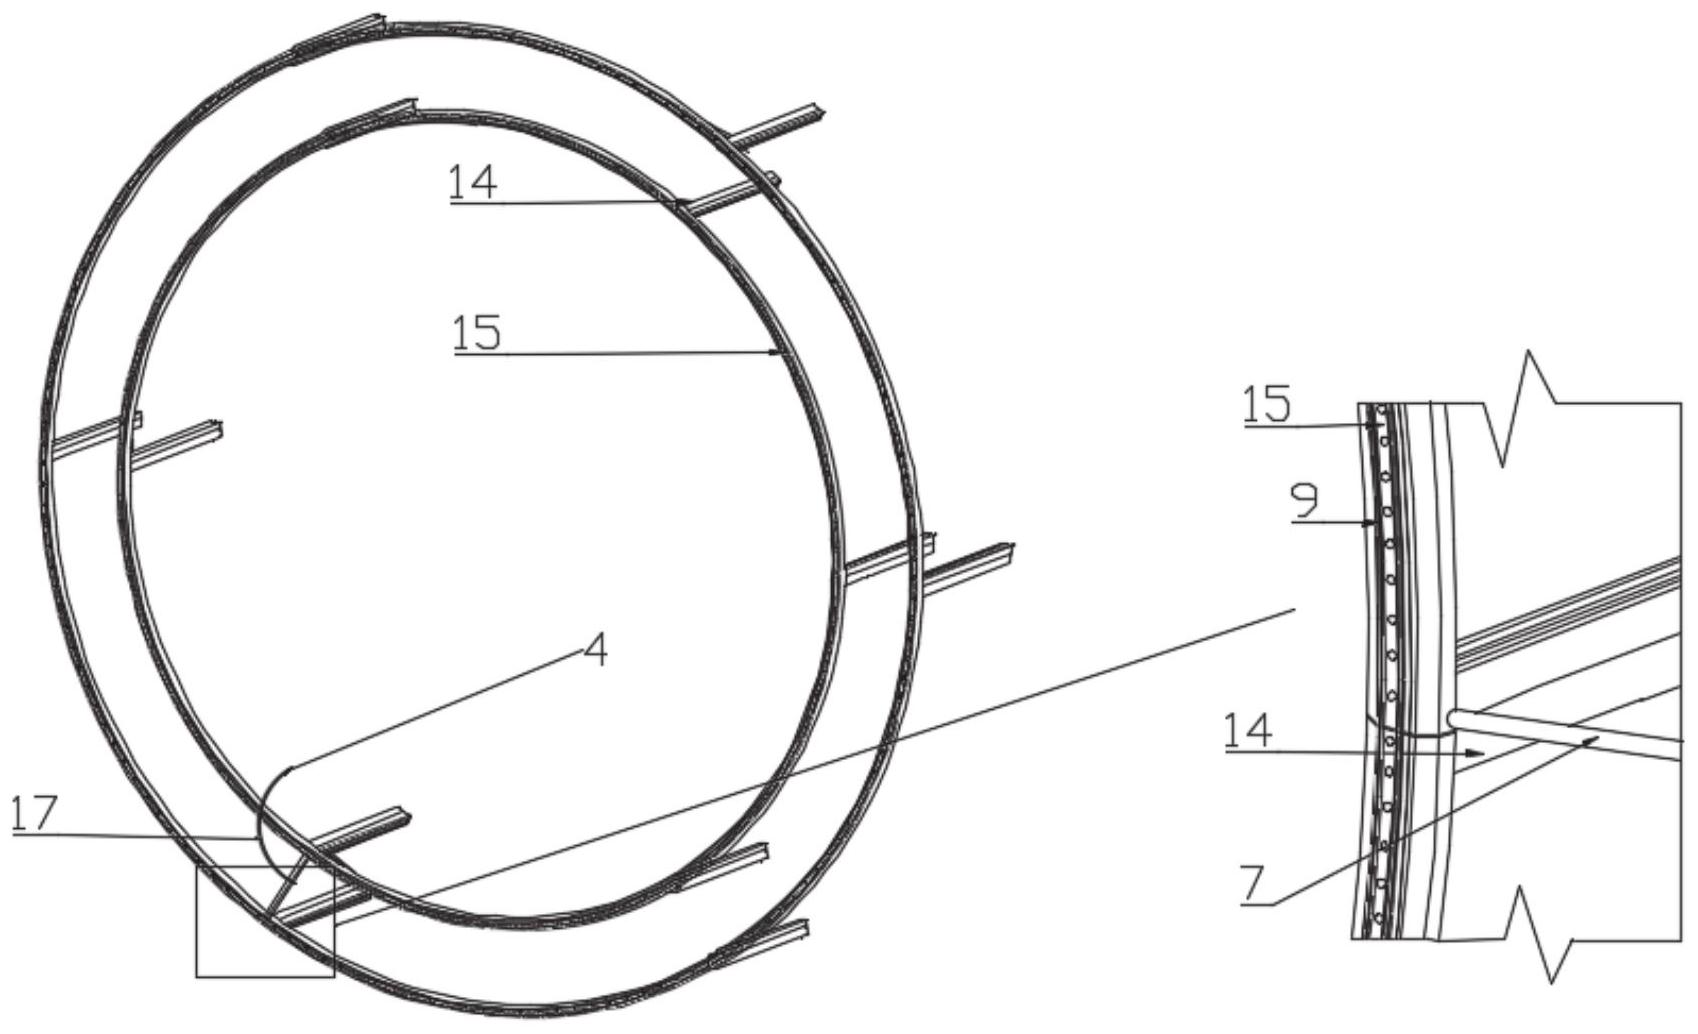 cn112360517a_一种隧道衬砌管片环及施工方法,隧道衬砌在审